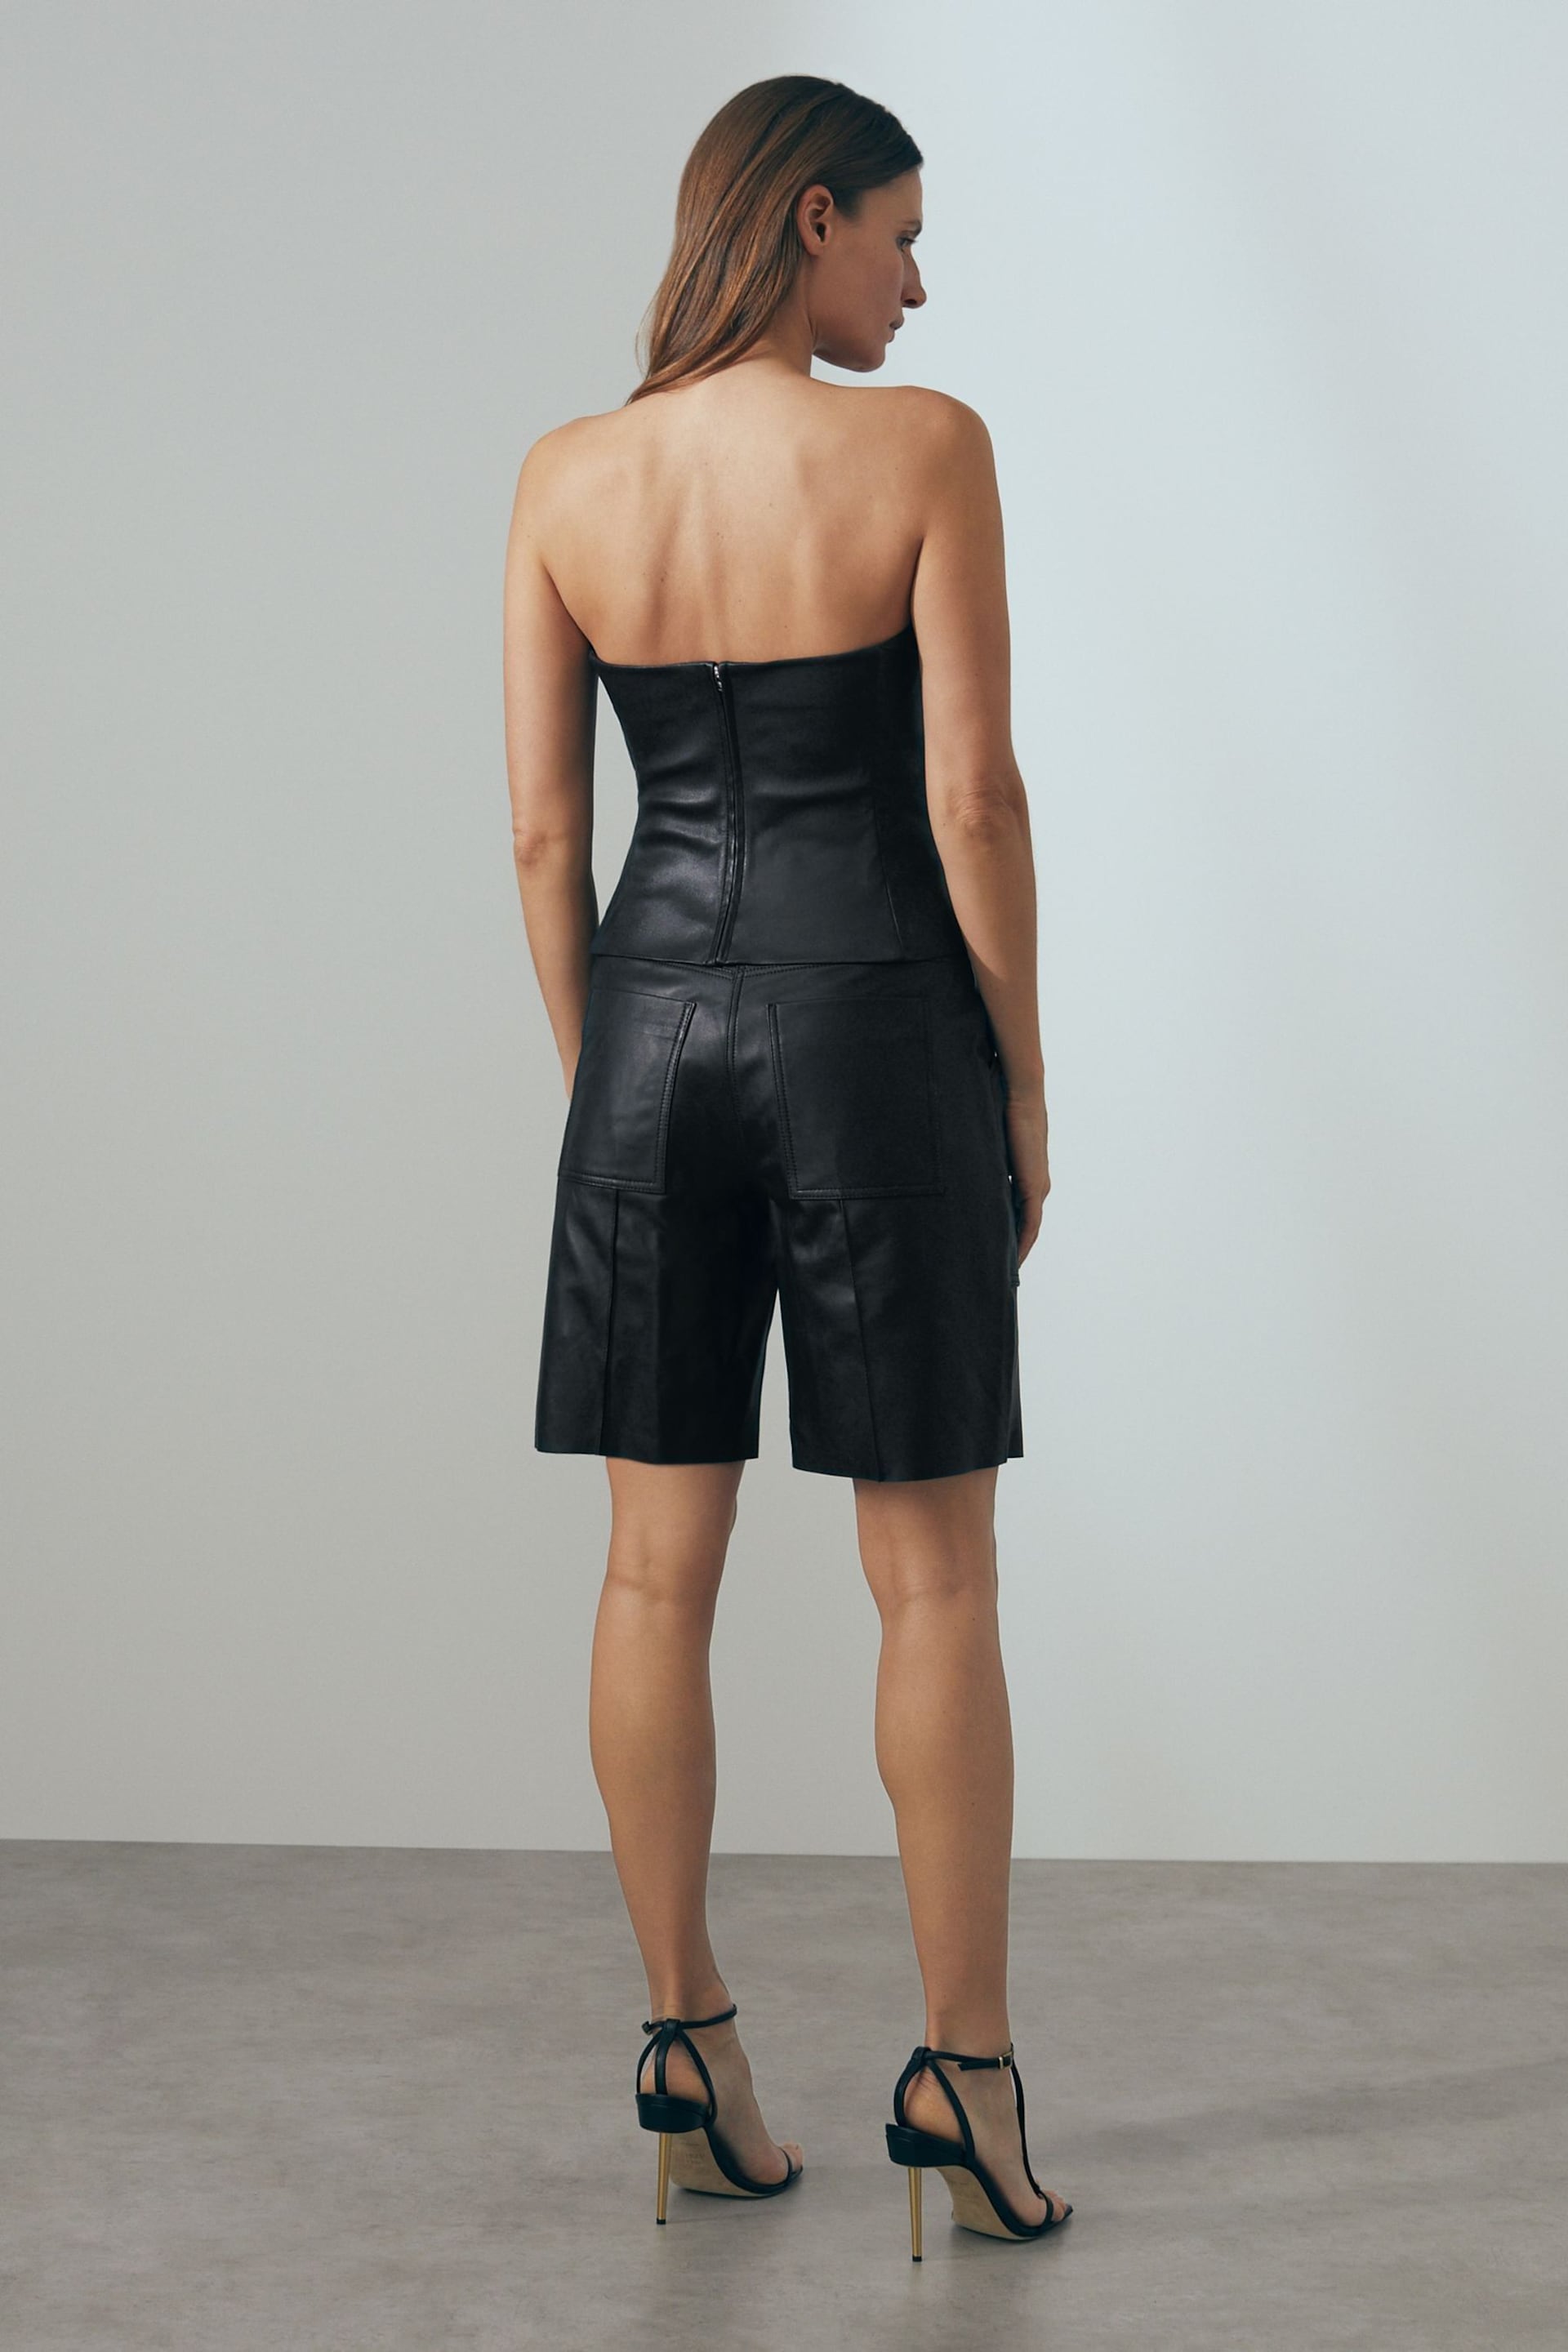 Reiss Black Eliana Leather Cargo Shorts - Image 6 of 7